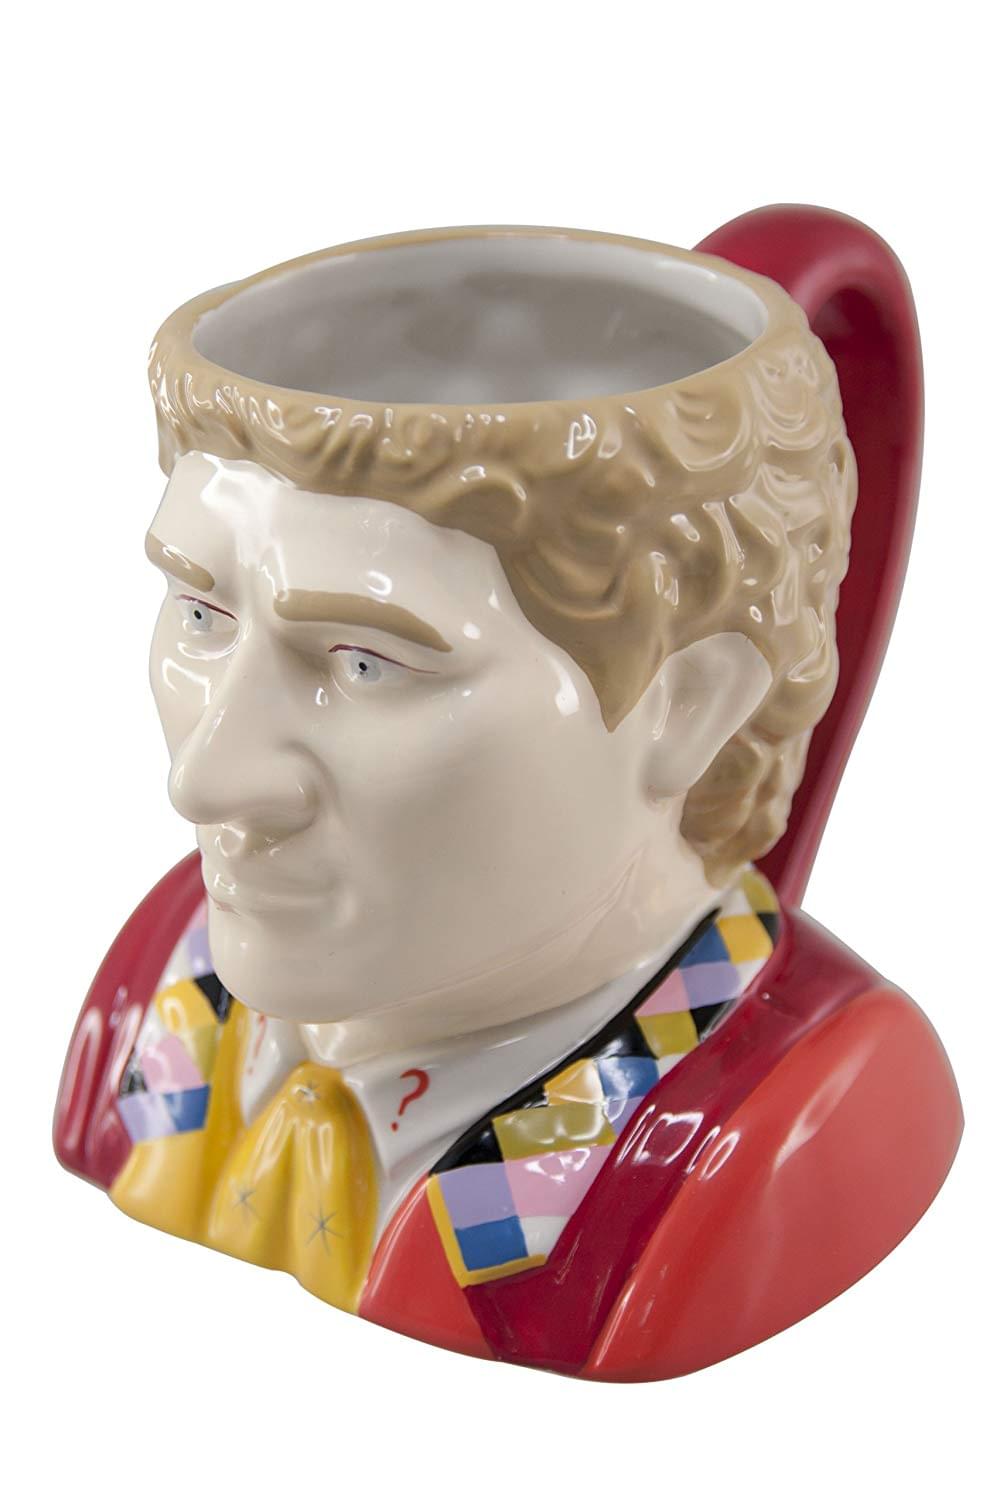 Doctor Who 6th Doctor Colin Barker Ceramic 3D Toby Jug Mug